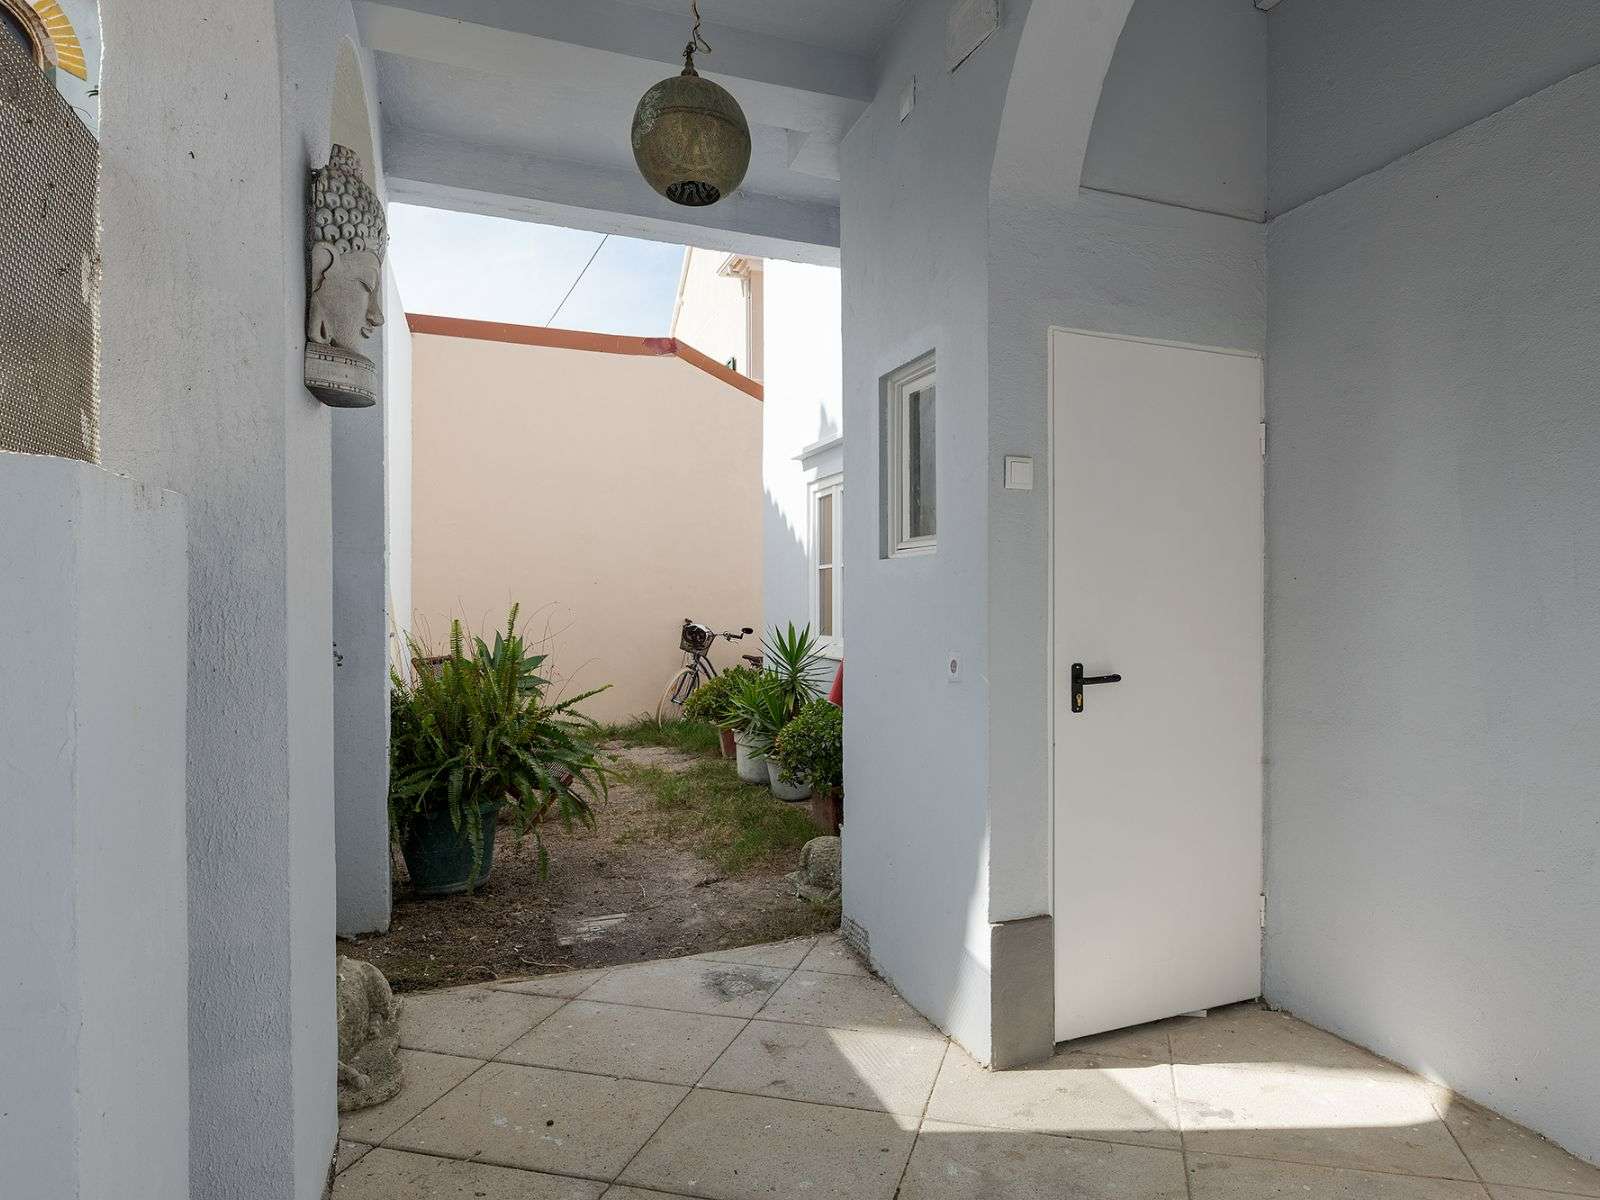 4 bedroom Villa with 317 sqm total area, for sale, in Costa da Caparica.